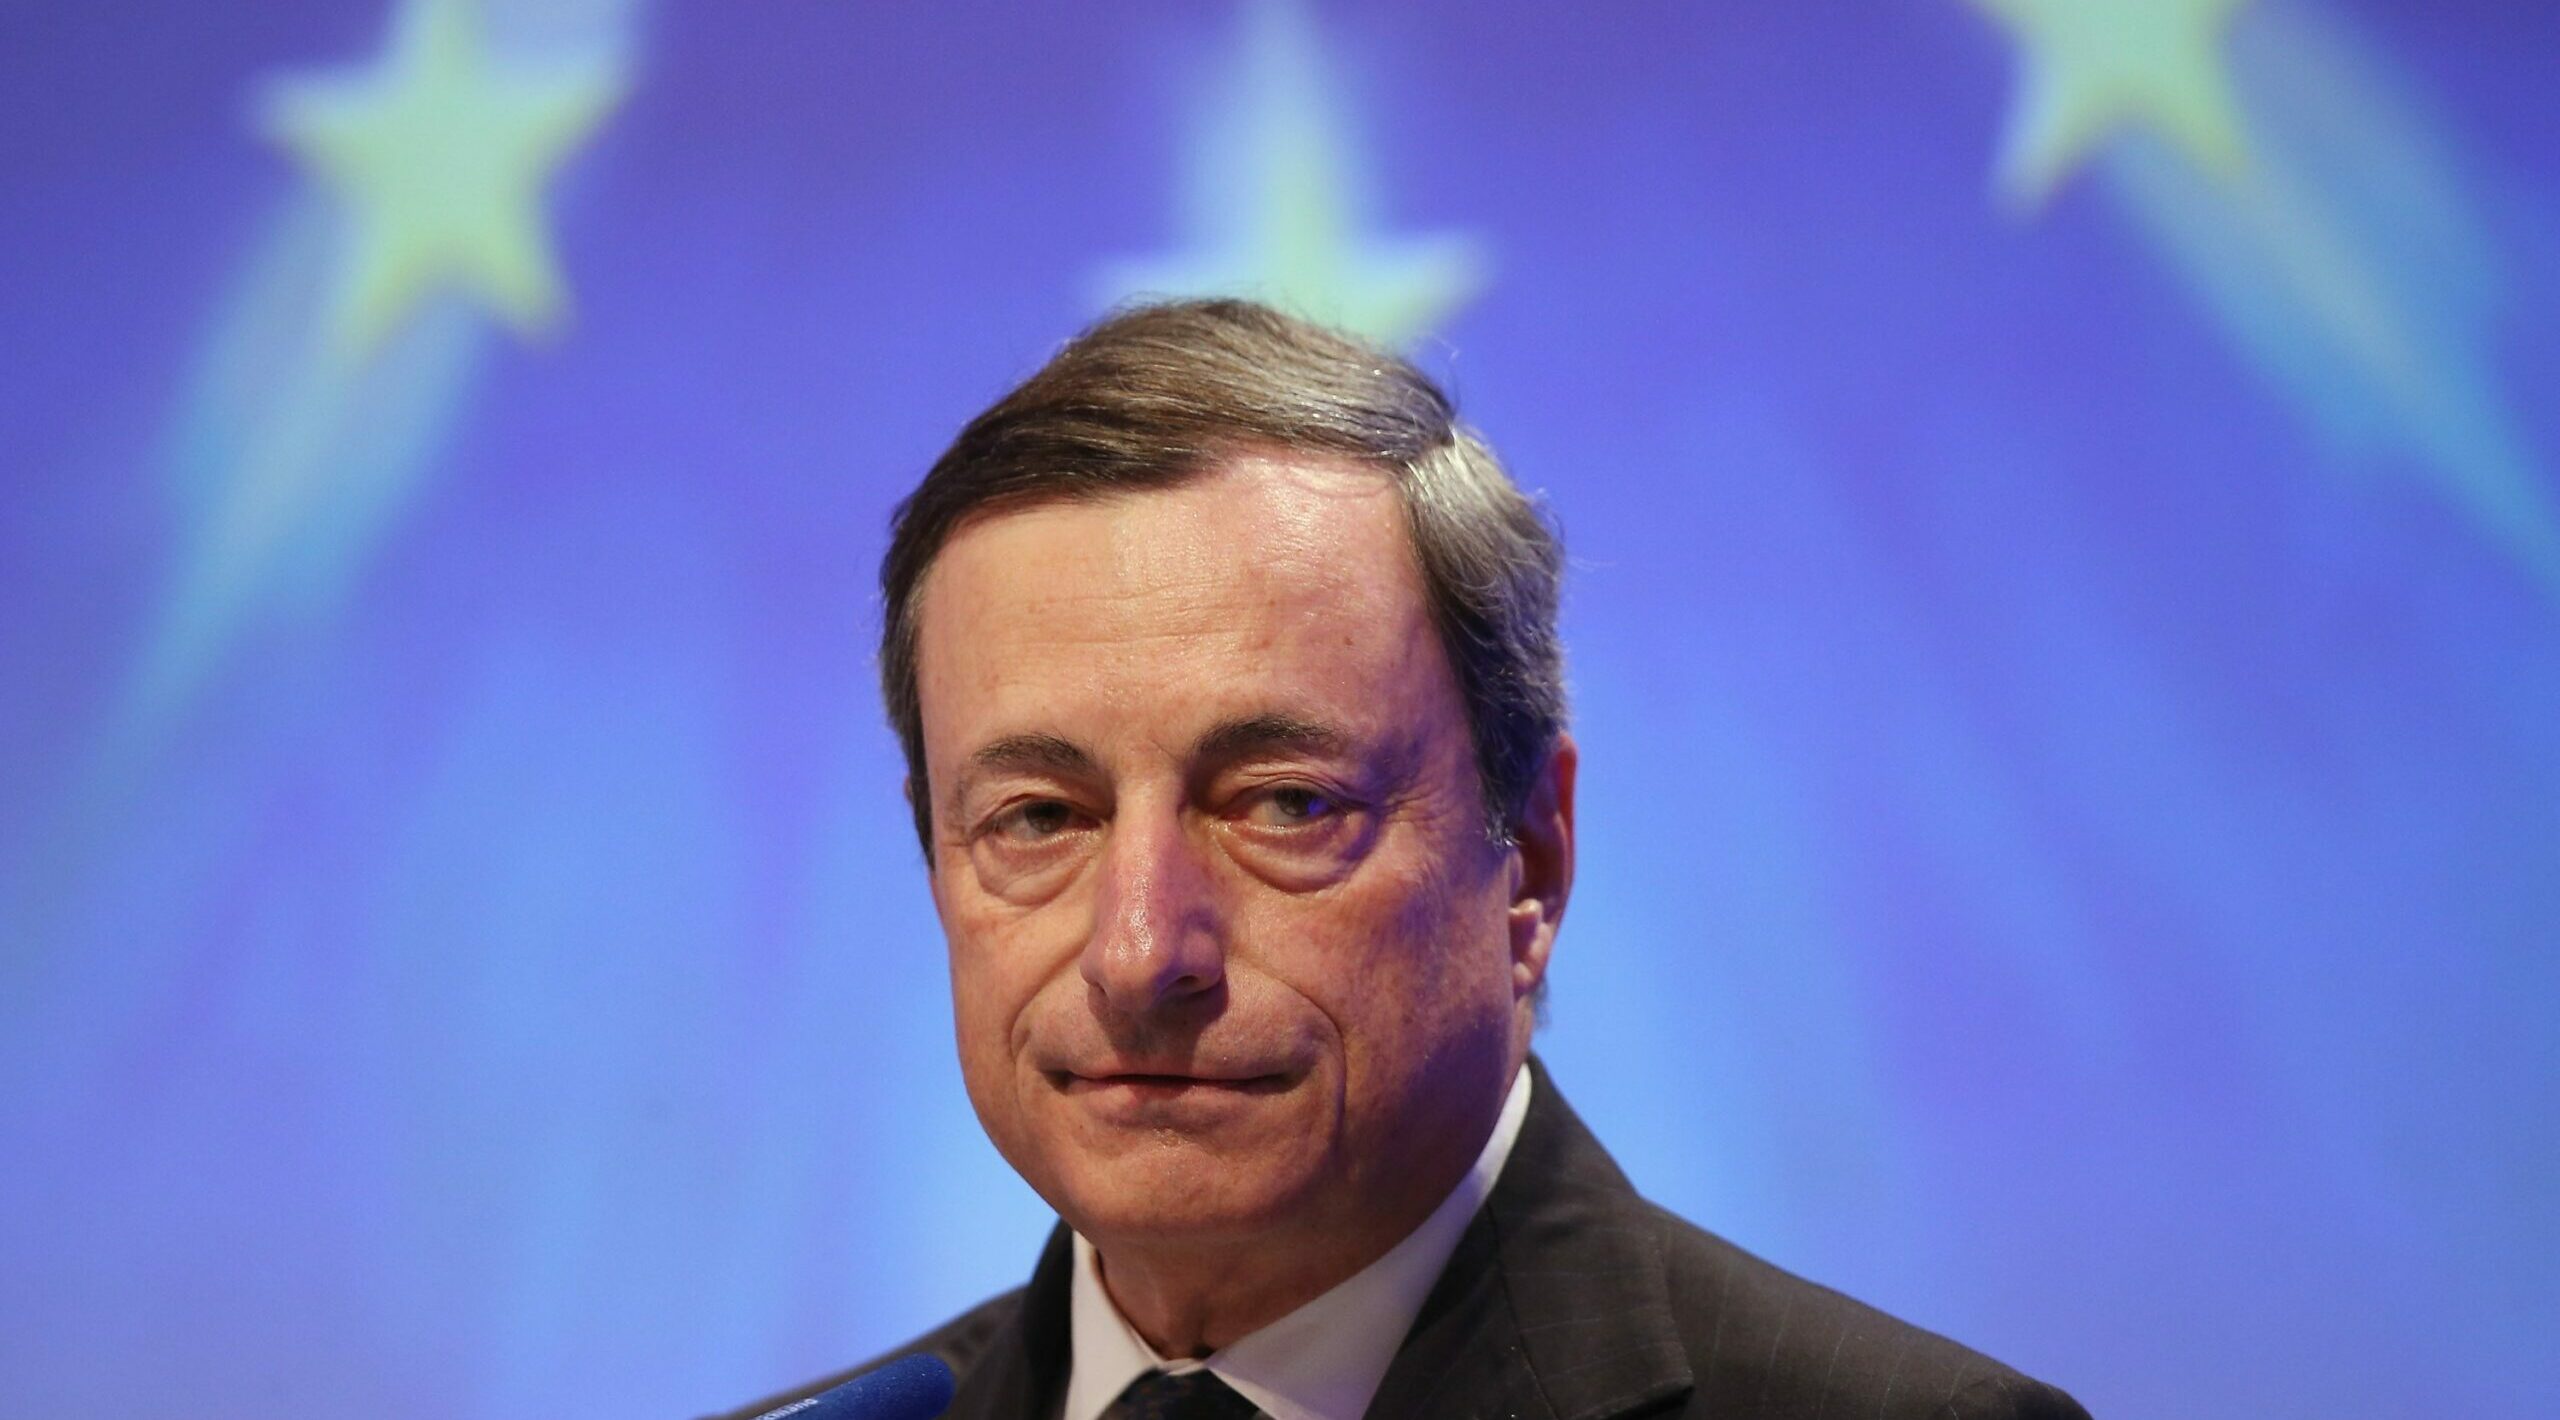 Il Presidente del Consiglio Mario Draghi